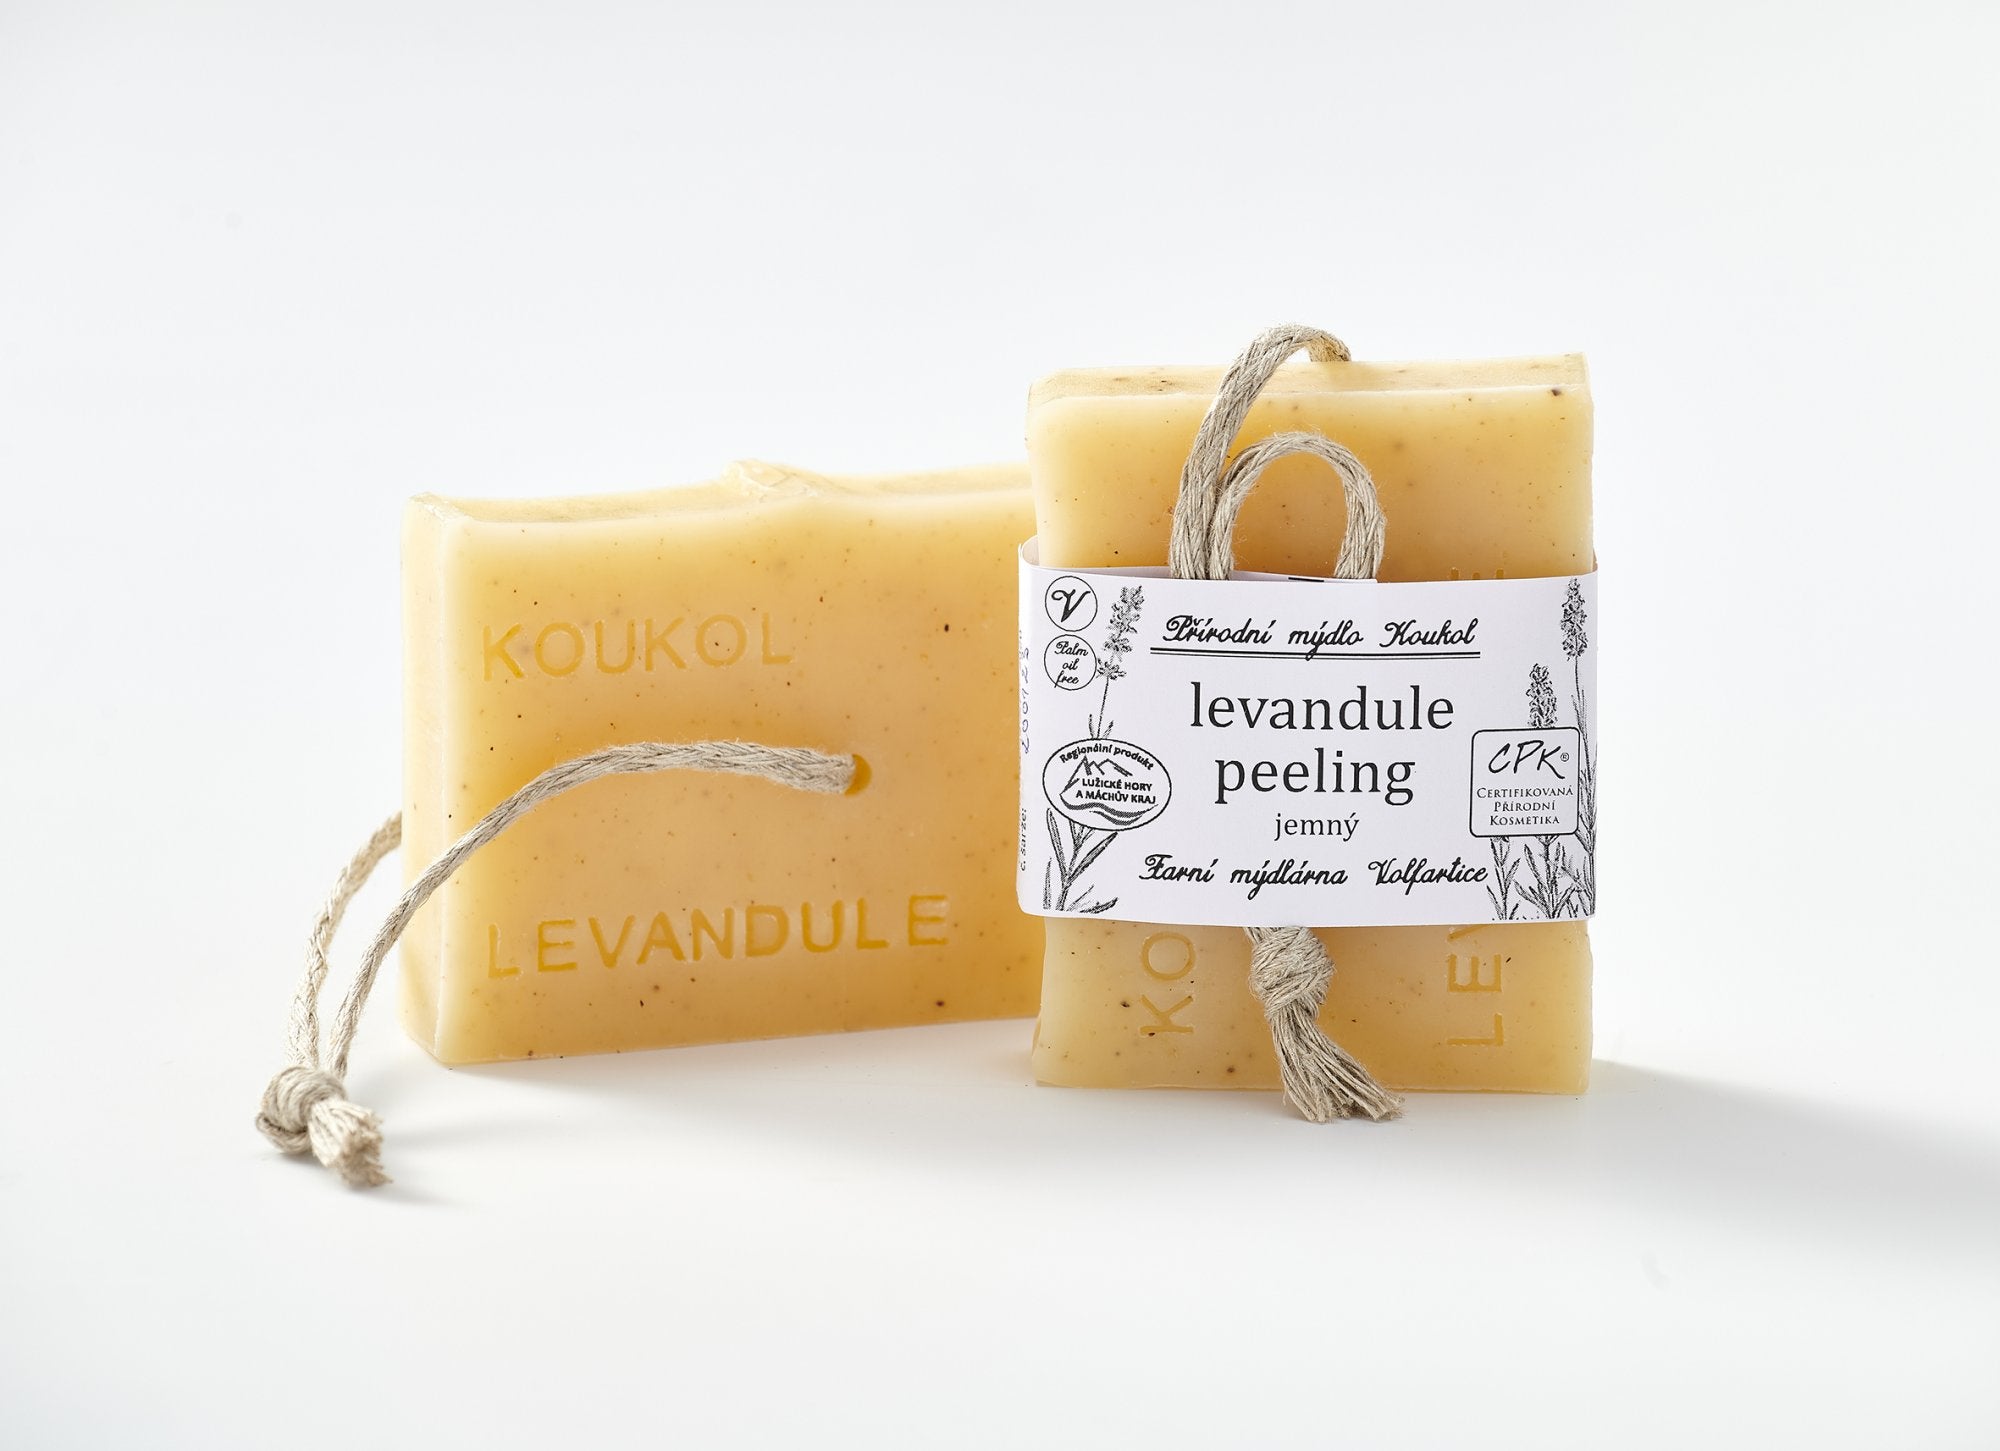 Mýdlárna Koukol Tuhé mýdlo peelingové jemné - Levandule (95 g) - pro každodenní použití Mýdlárna Koukol